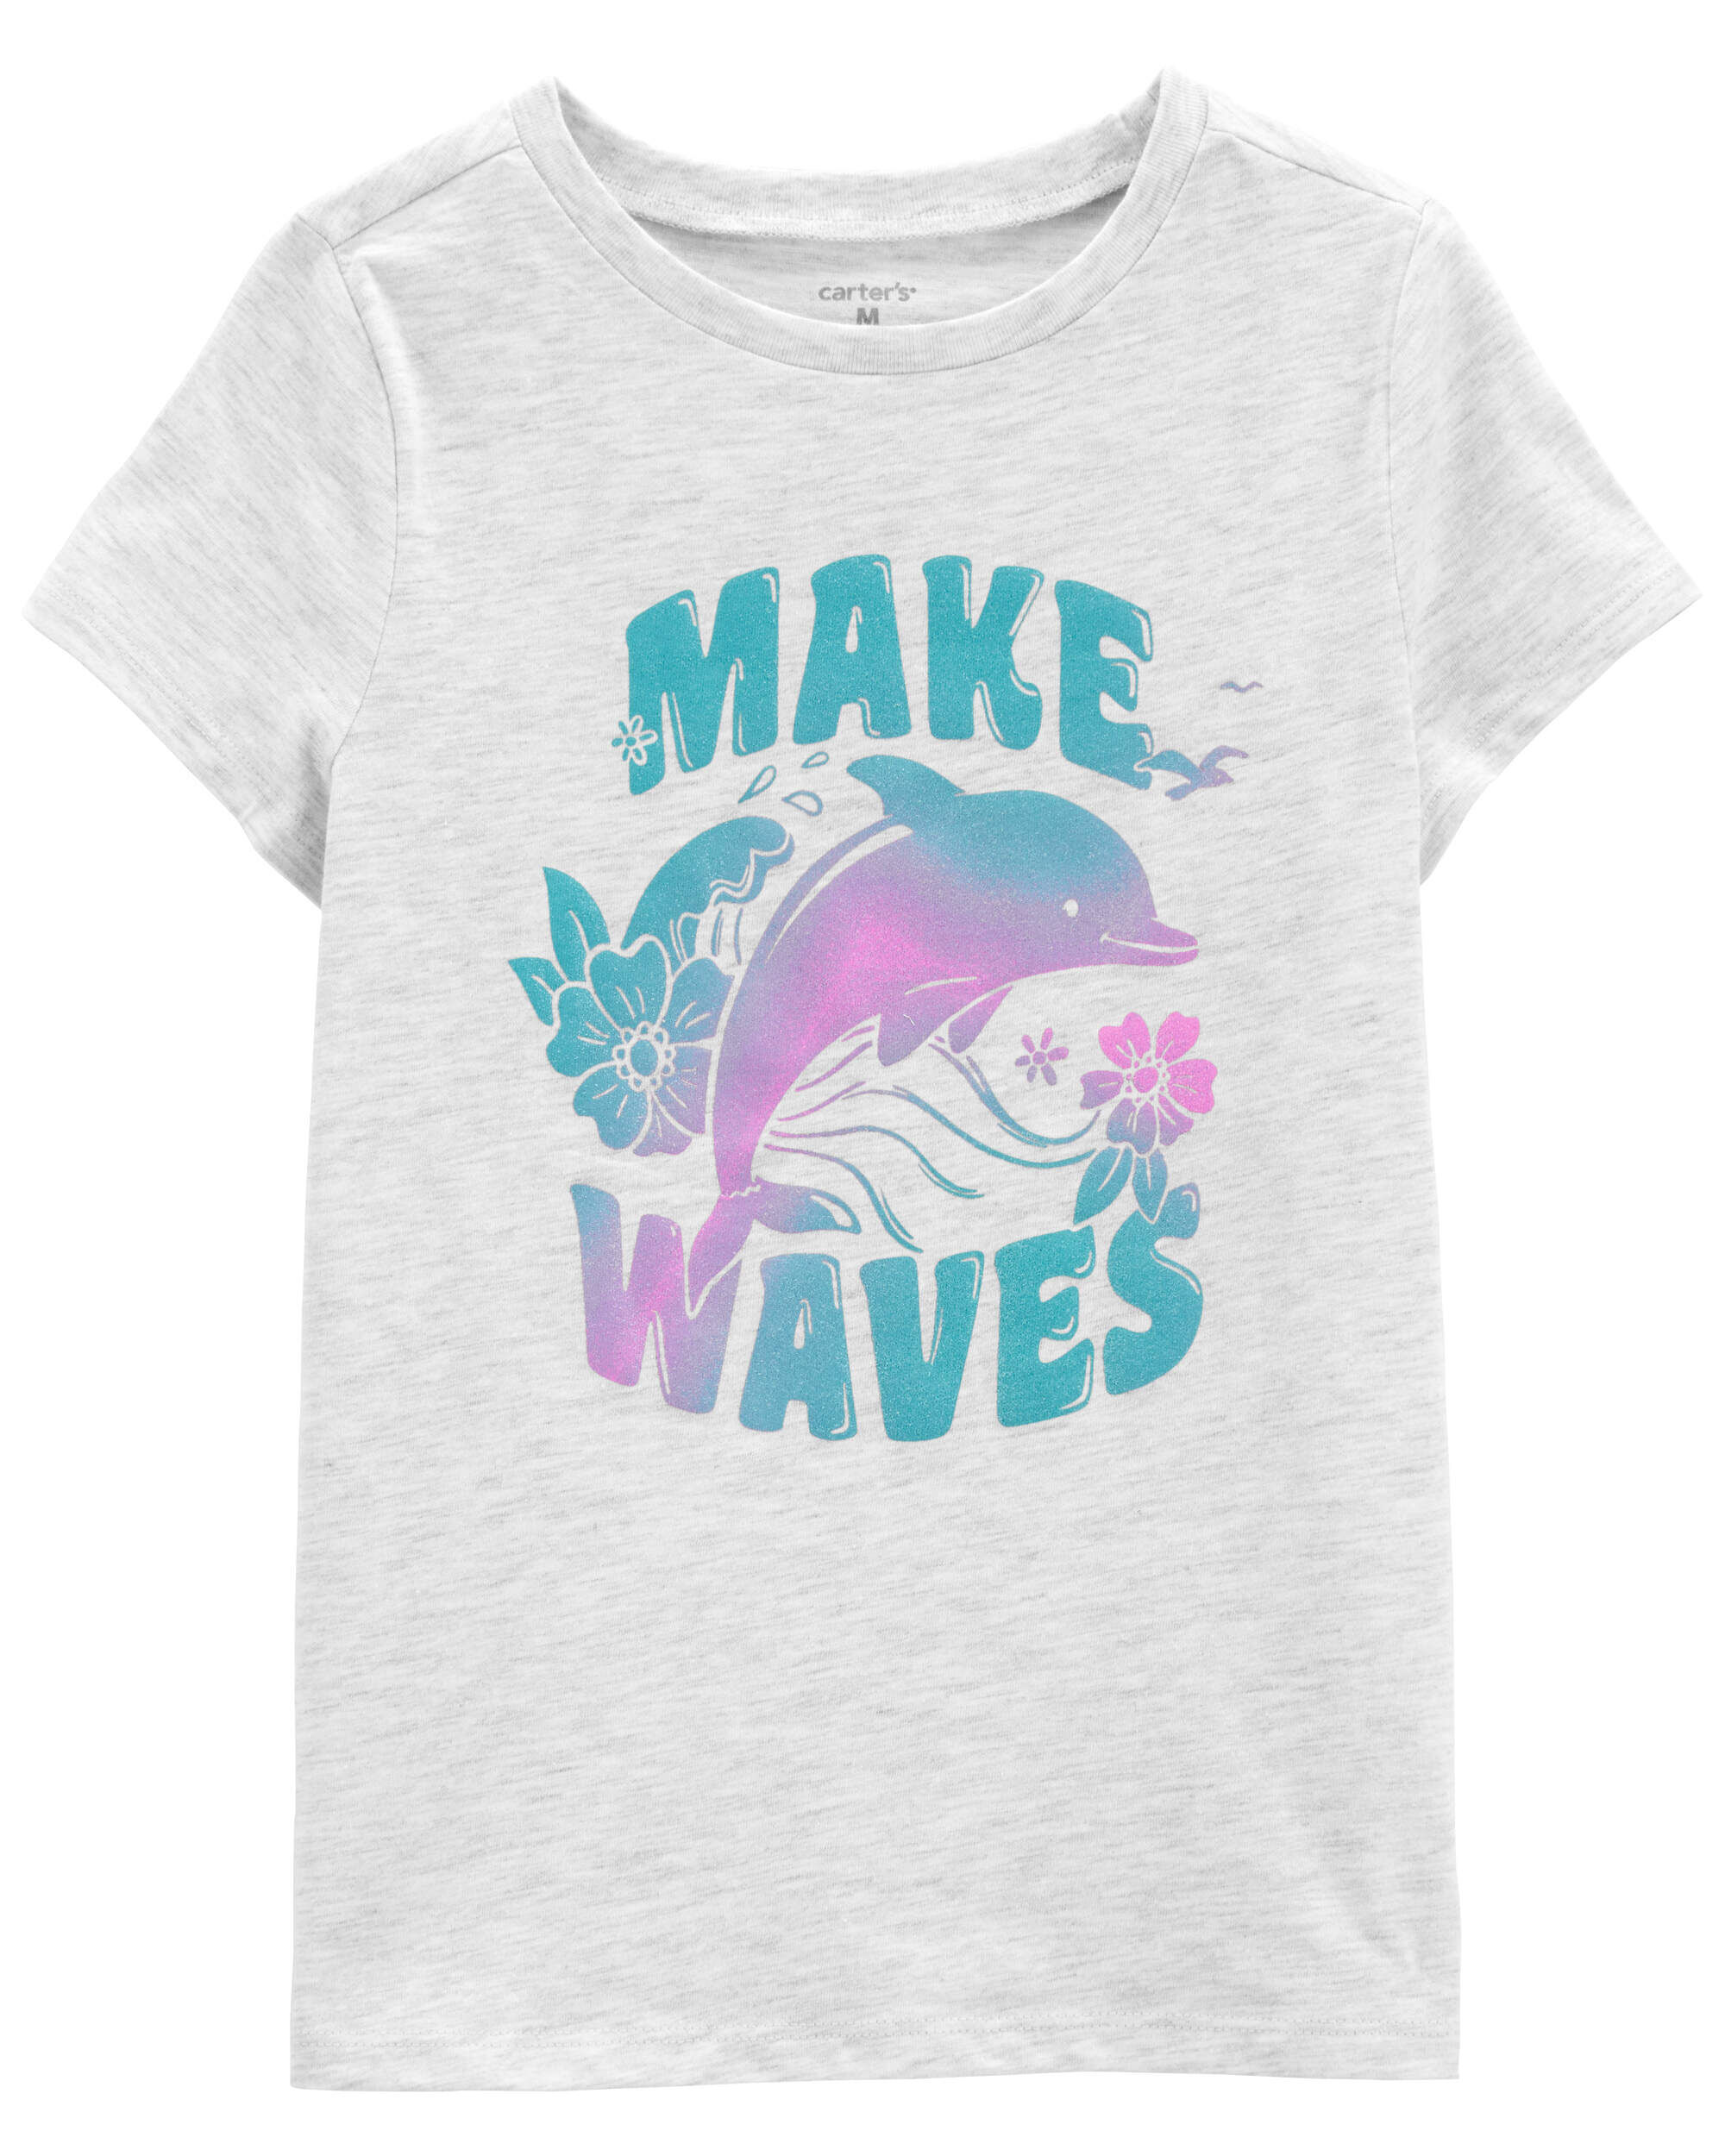 Футболка Kid Make Waves с рисунком дельфина Carter's